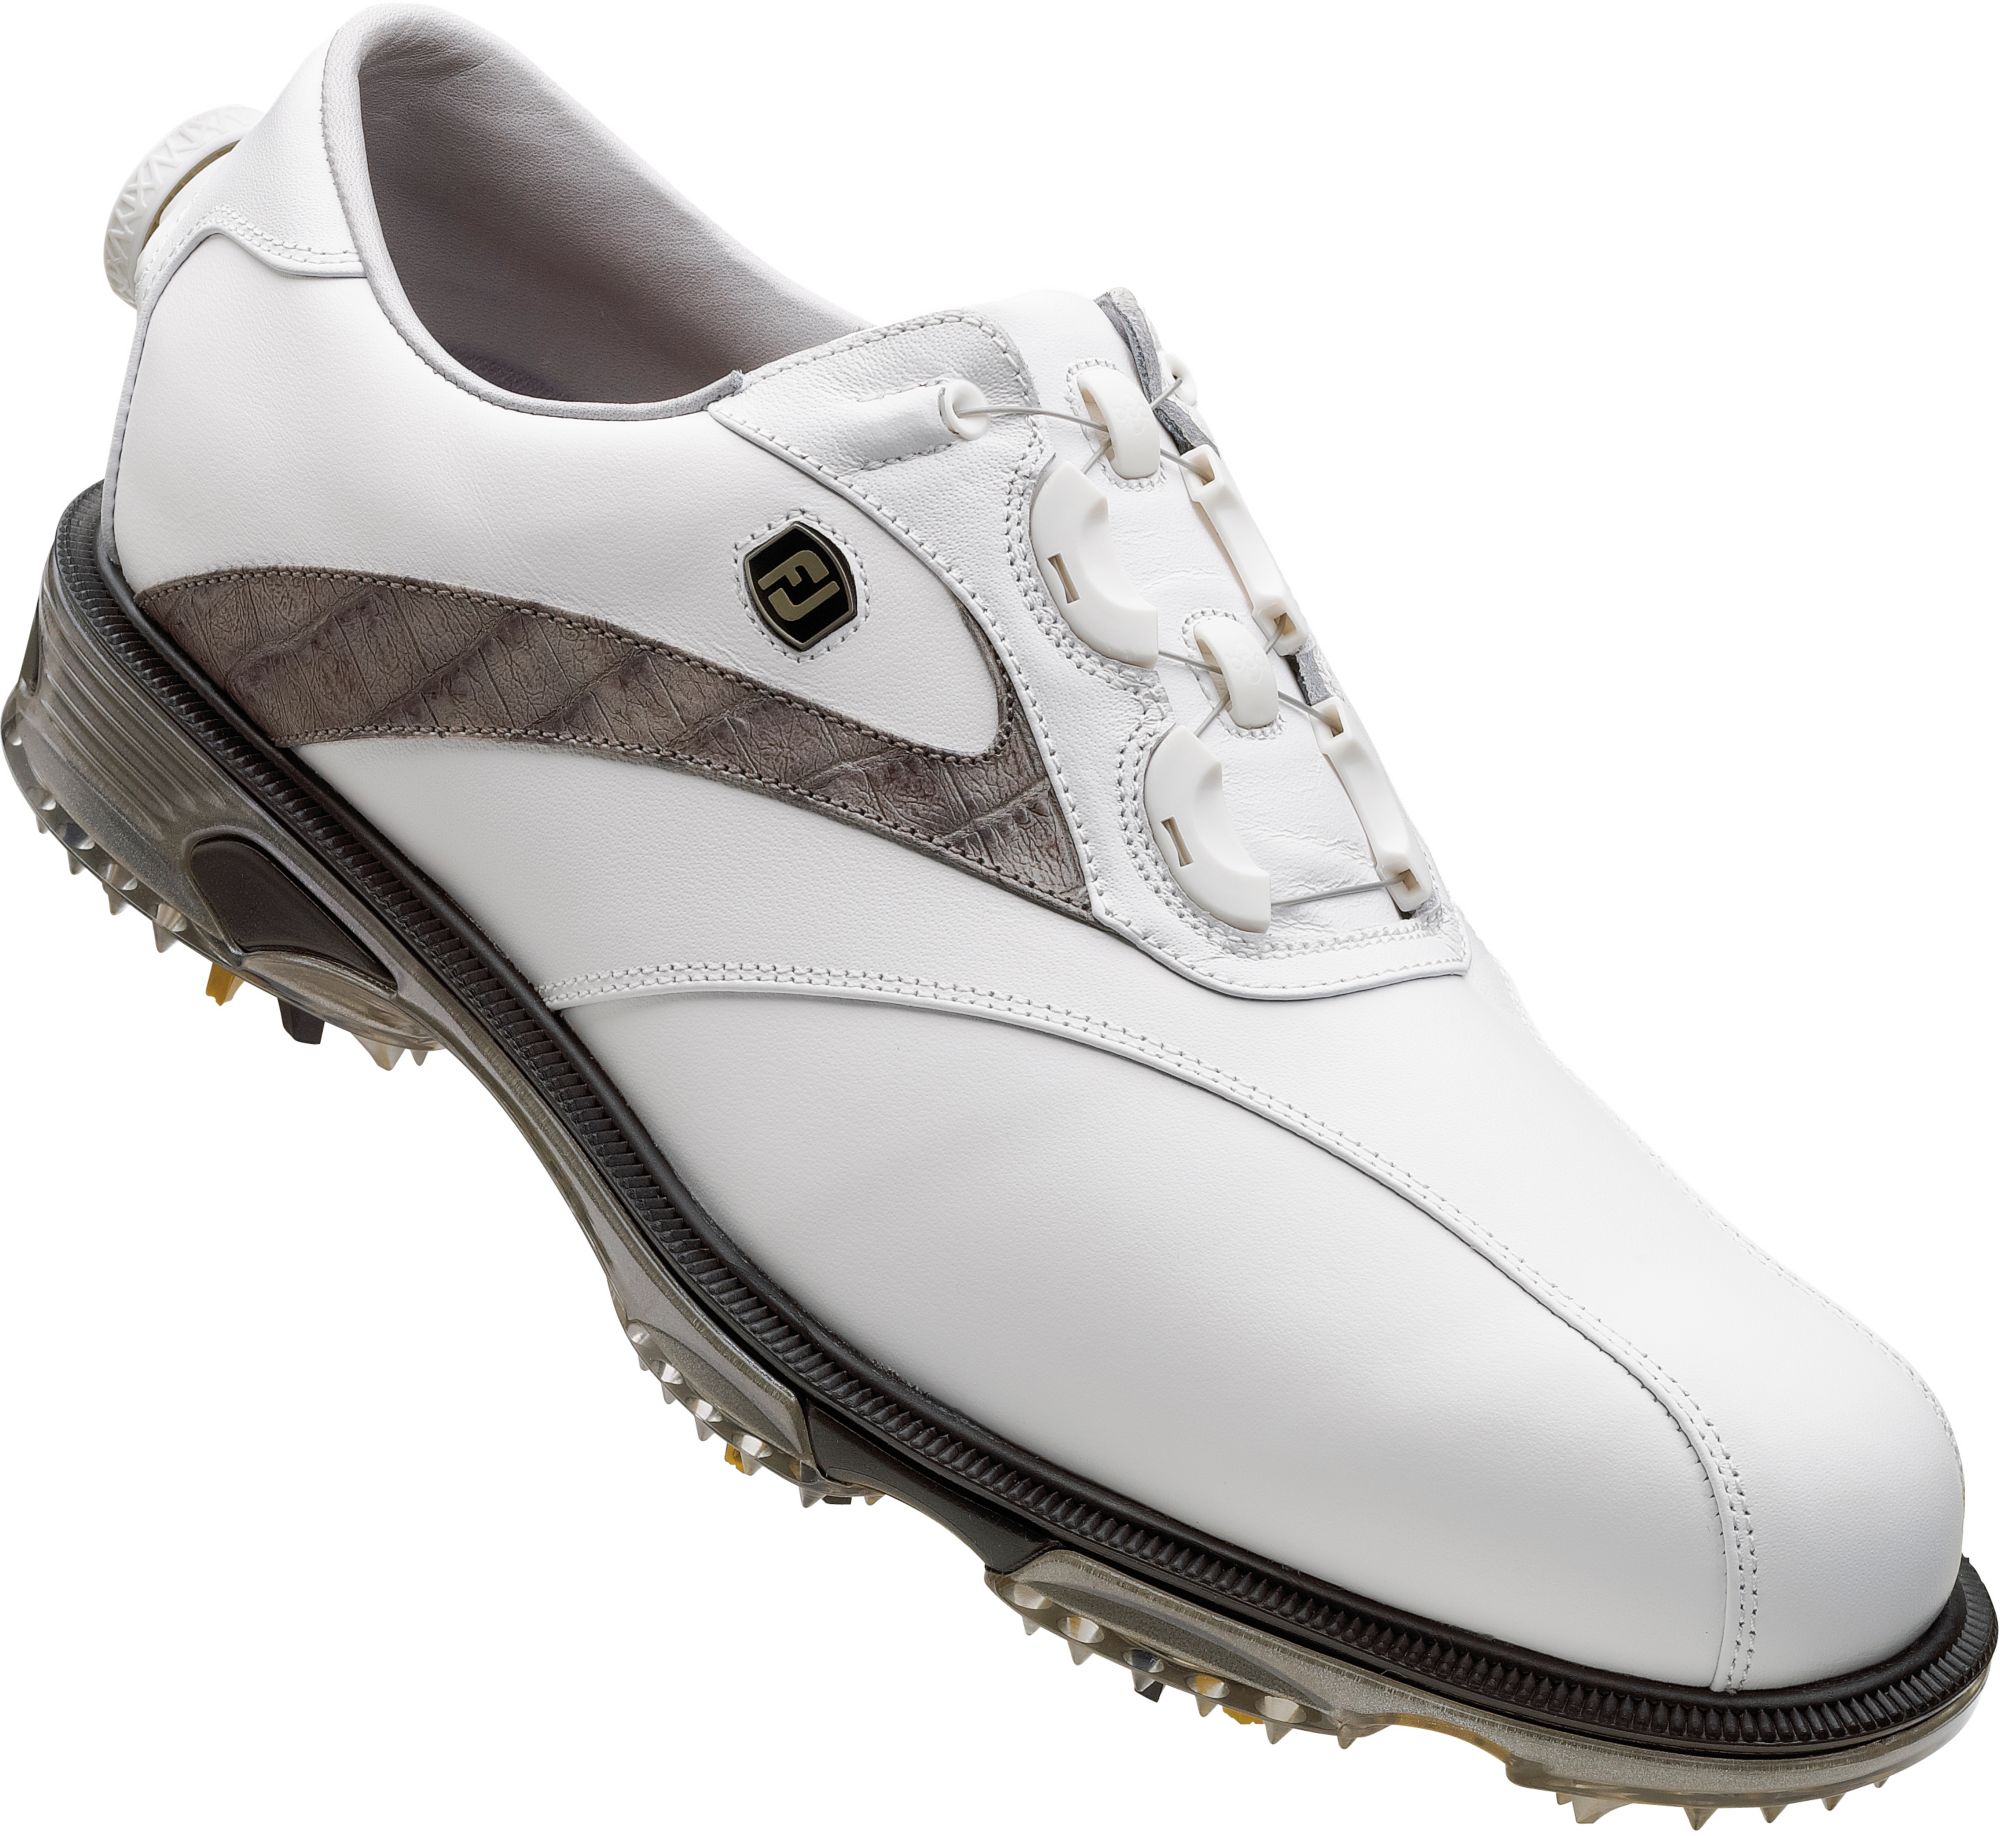 Footjoy Men’s Dryjoys Tour Golf Shoe – White Smooth/grey Lizard Print ...